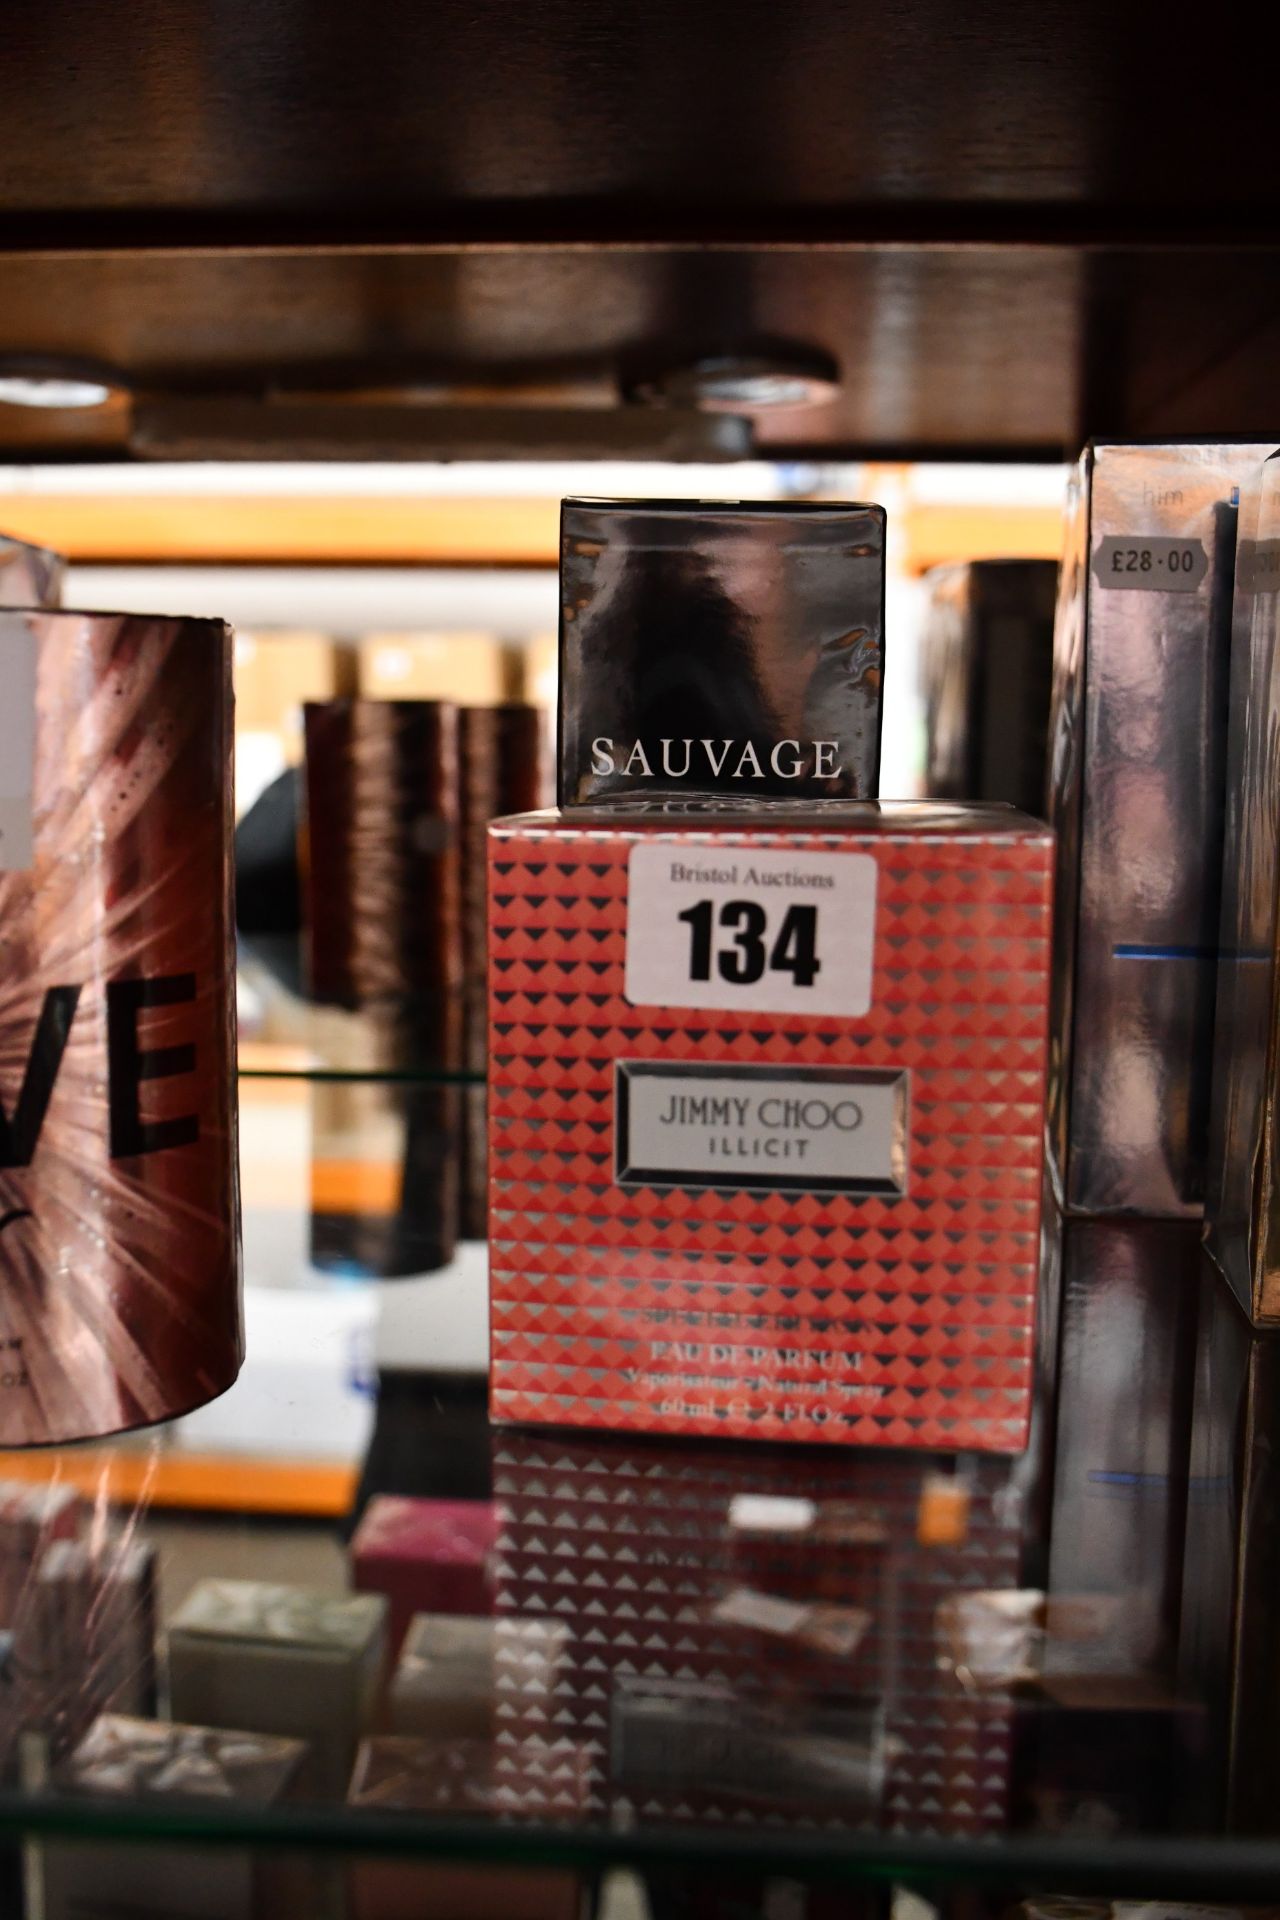 Dior Sauvage eau de toilette (200ml) and Jimmy Choo Illicit eau de parfum (60ml).